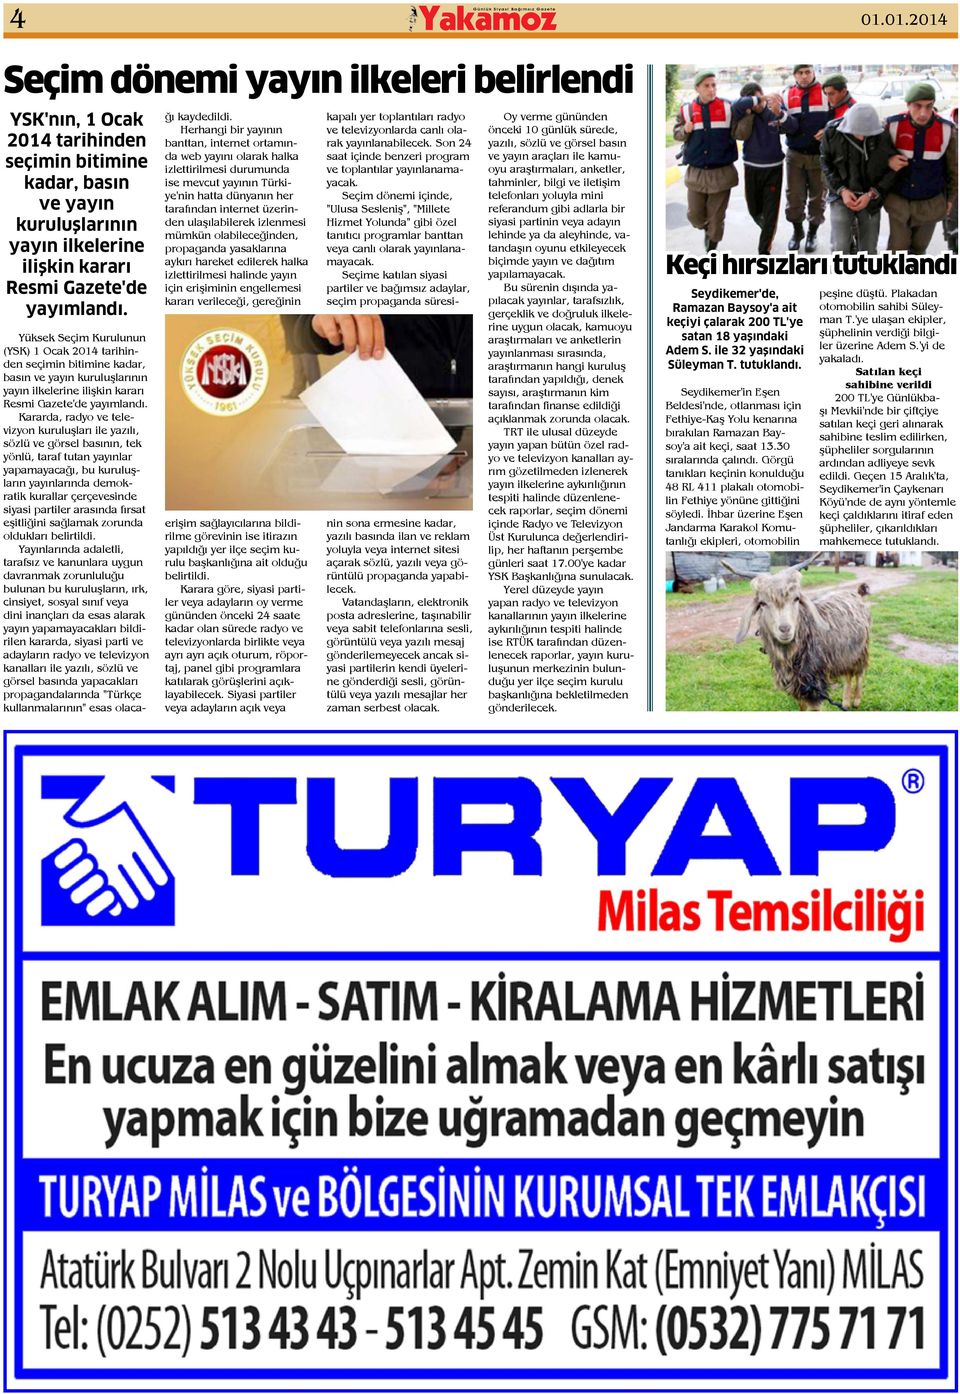 Yüksek Seçim Kurulunun (YSK) 1 Ocak 2014 tarihinden seçimin bitimine kadar, basın ve yayın kuruluşlarının yayın ilkelerine ilişkin kararı Resmi Gazete'de yayımlandı.